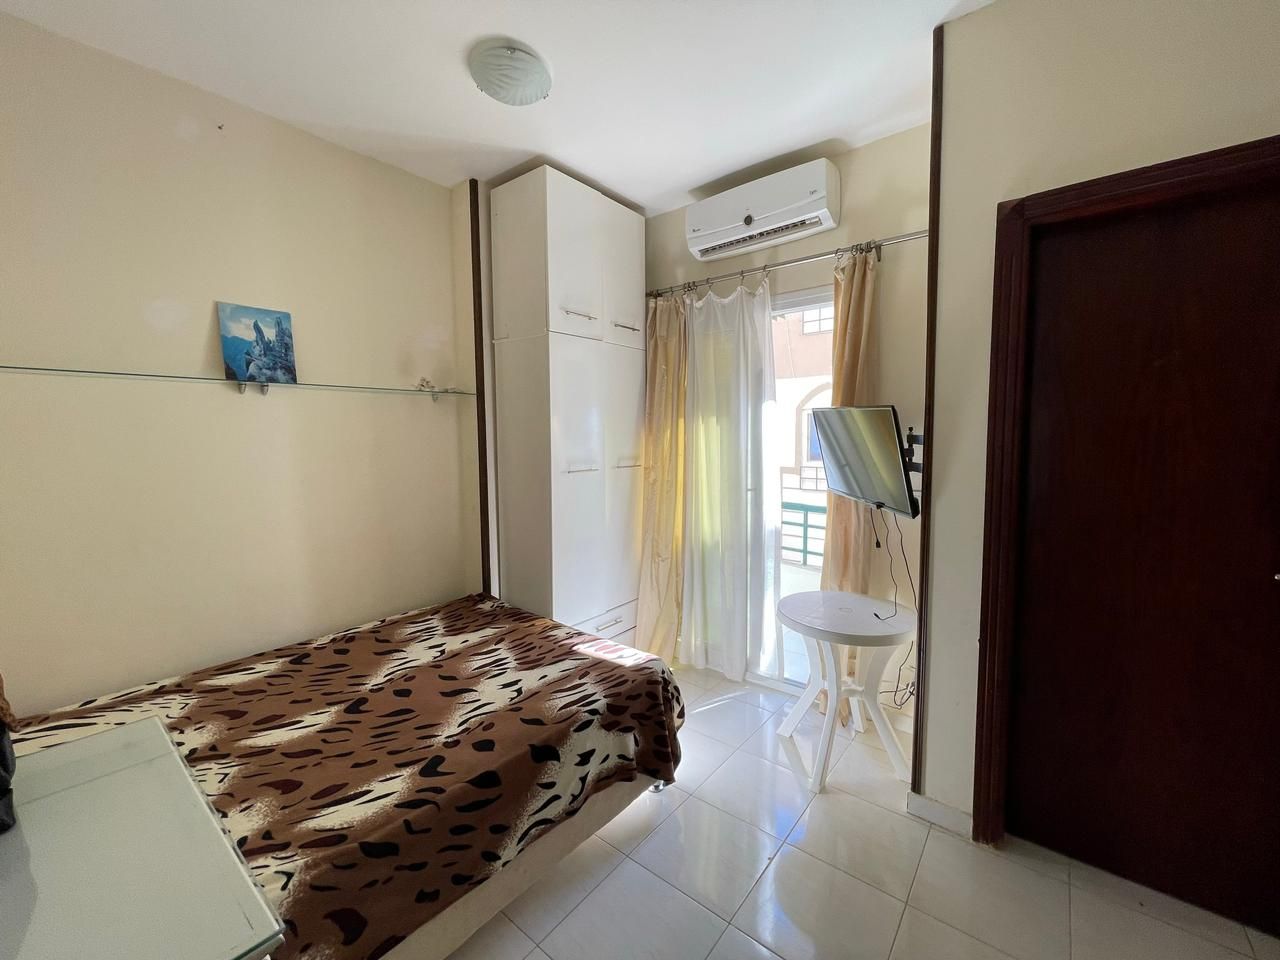 Apartment in Hurghada, Ägypten, 26 m2 - Foto 1